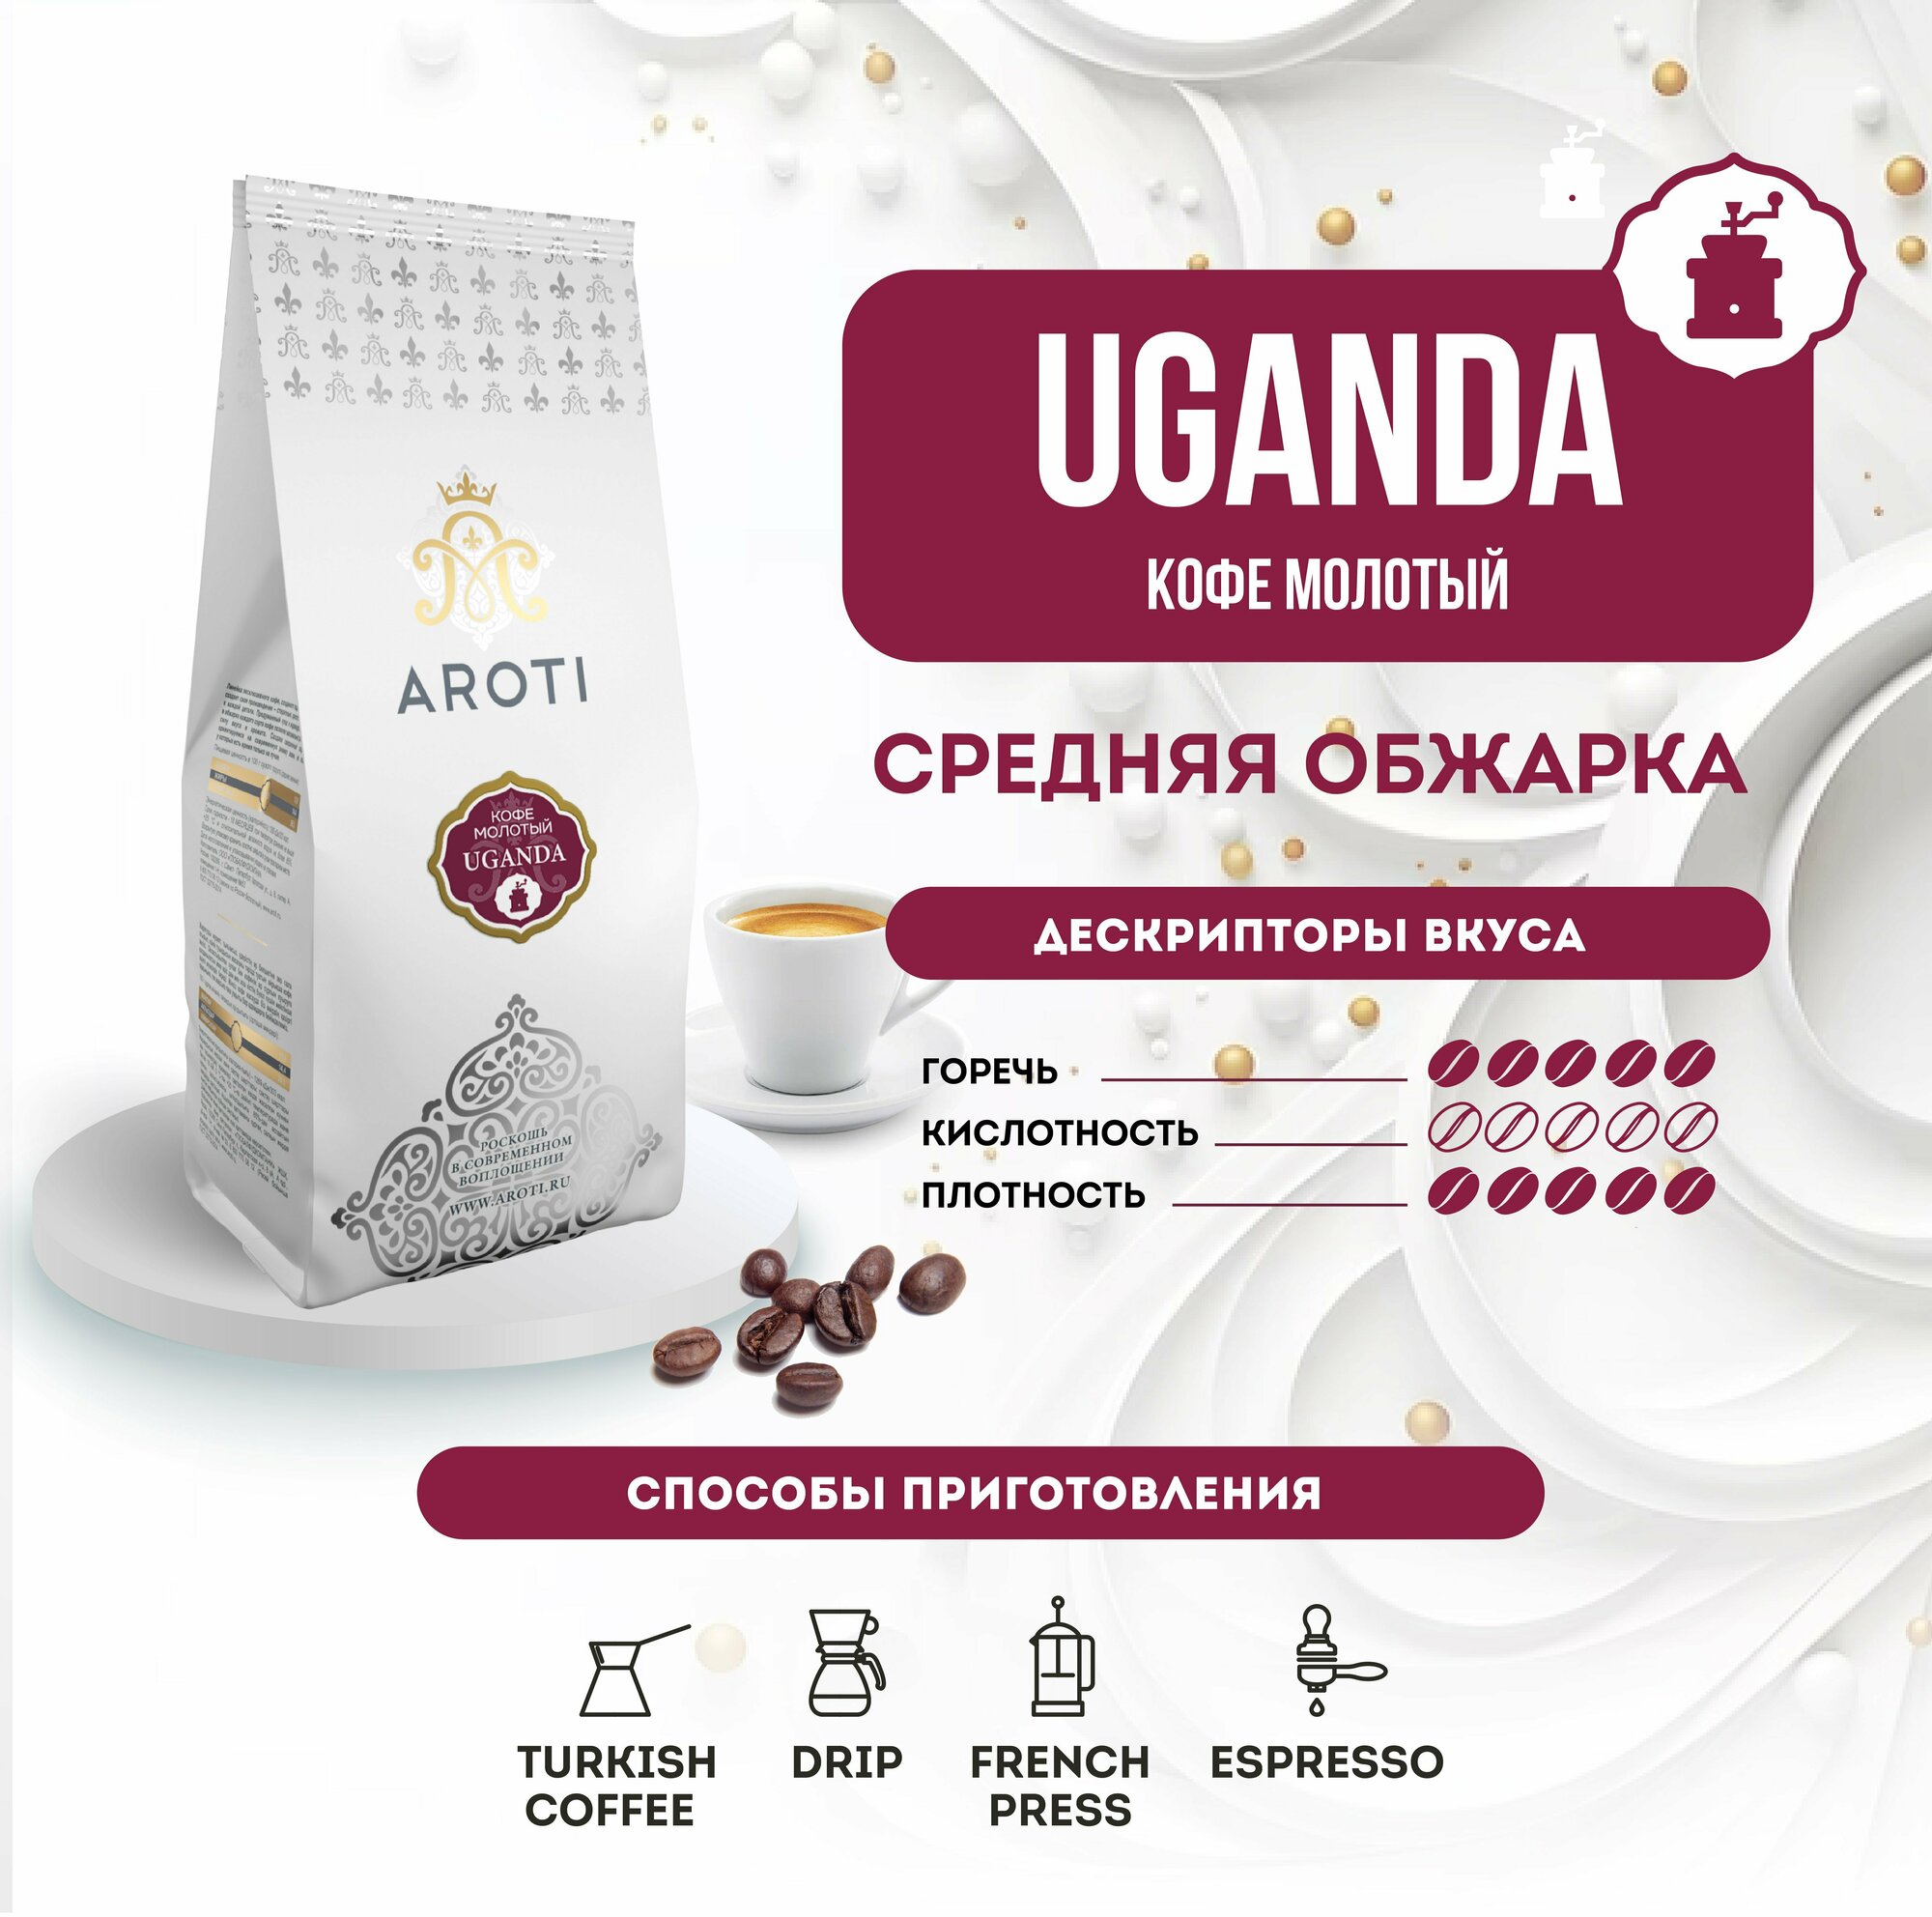 Кофе молотый моносорт робуста UGANDA (Уганда), Aroti, средняя обжарка, свежеобжаренный, 250 гр.